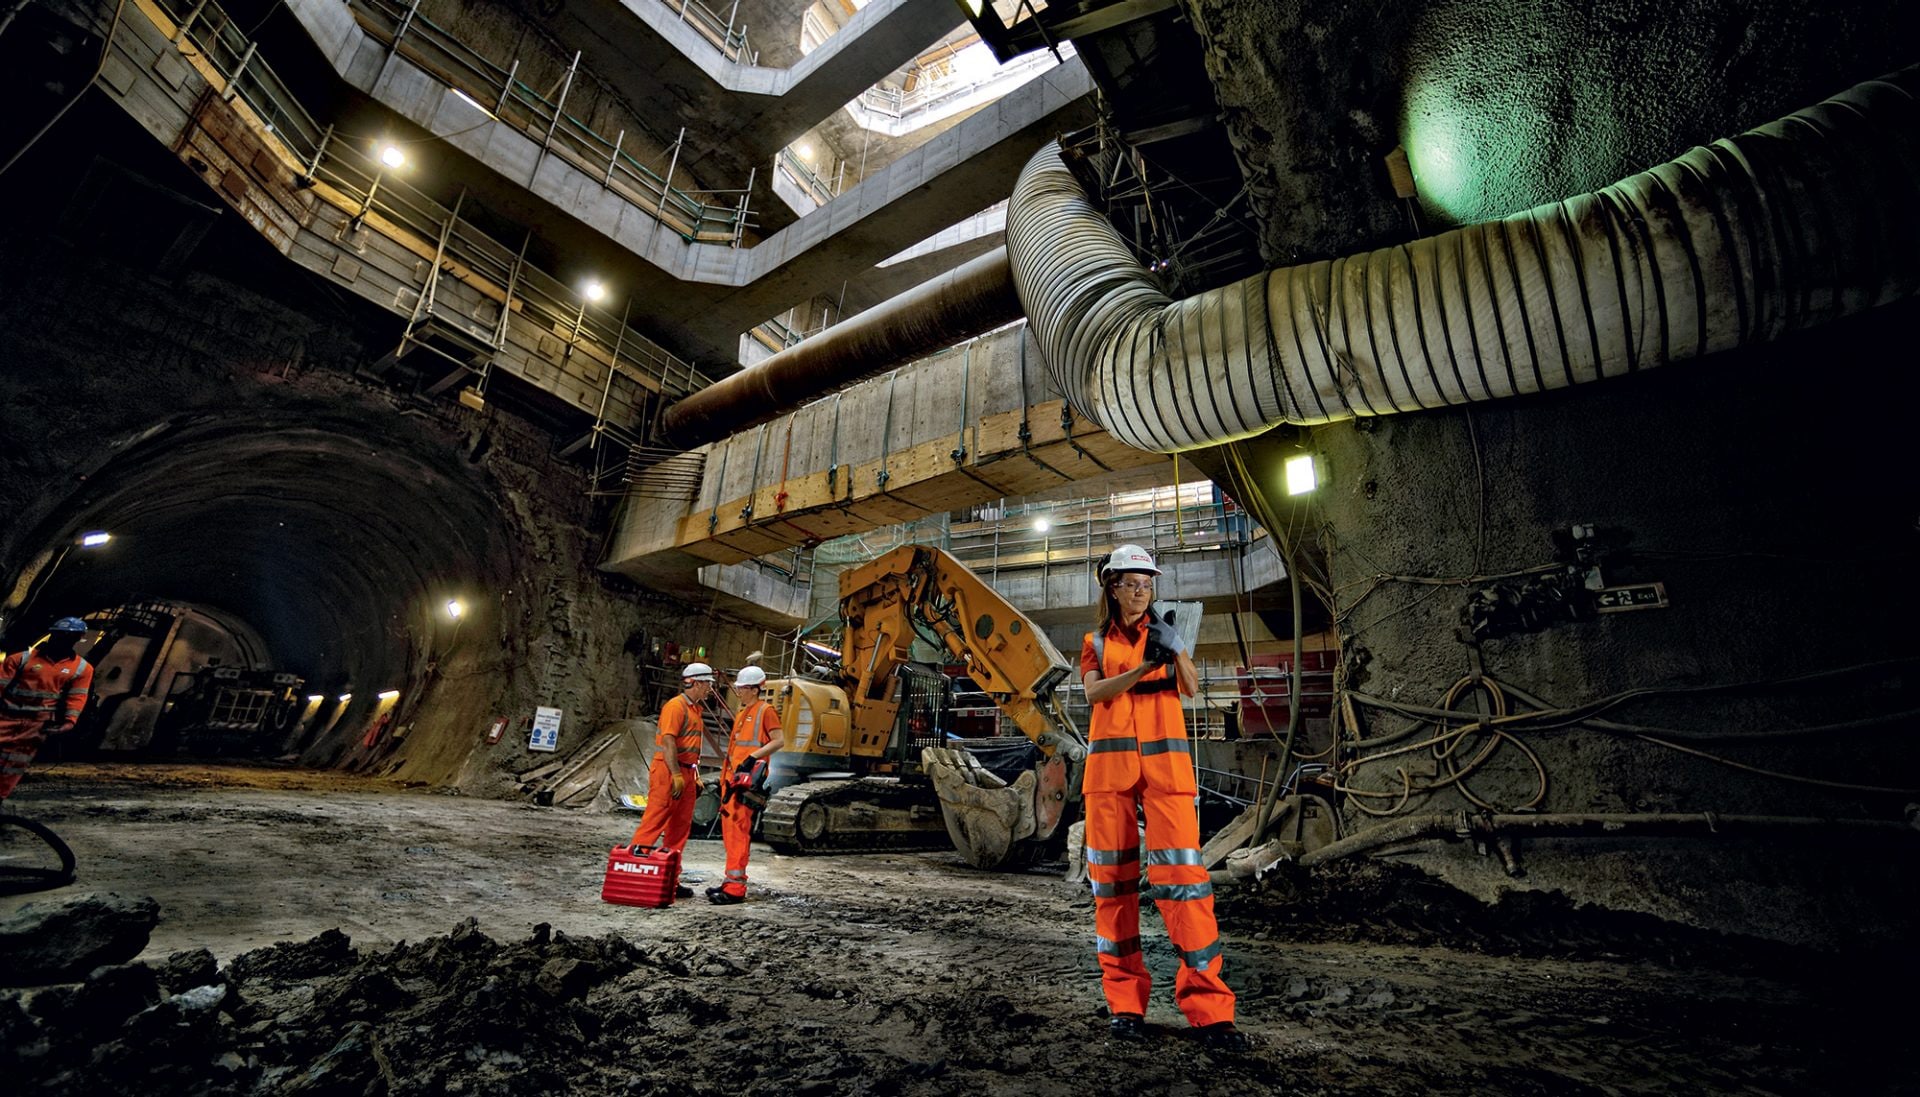 Ingénieur terrain Hilti sur un chantier de construction d'un tunnel de métro